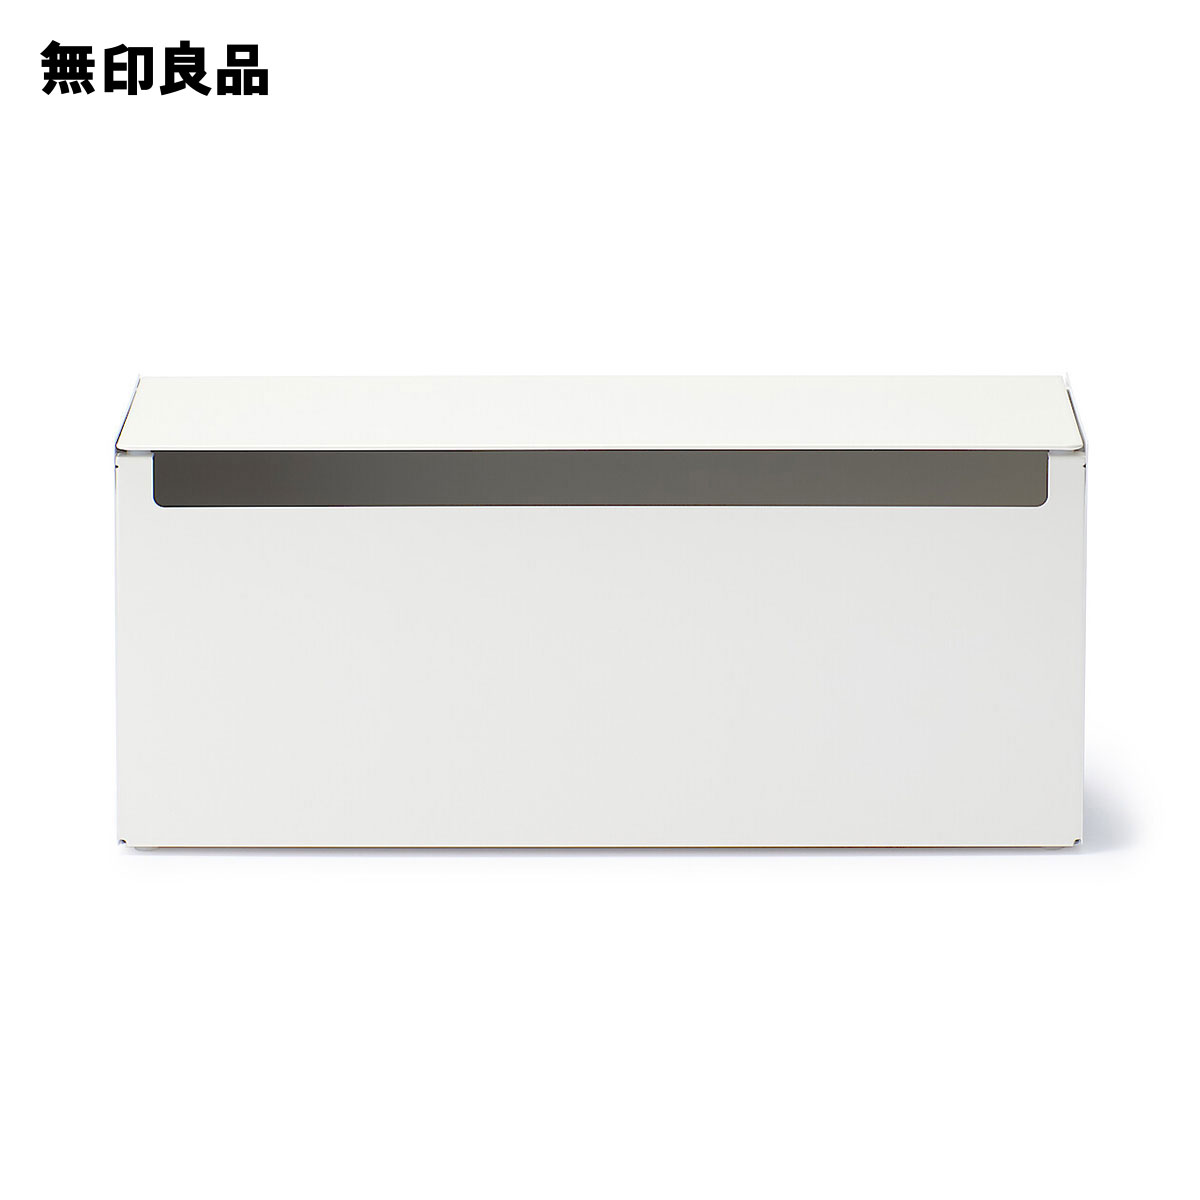 シェーカーボックス オーバル 木製 収納ボックス ふた付き シンプル おしゃれ (L, レッド)